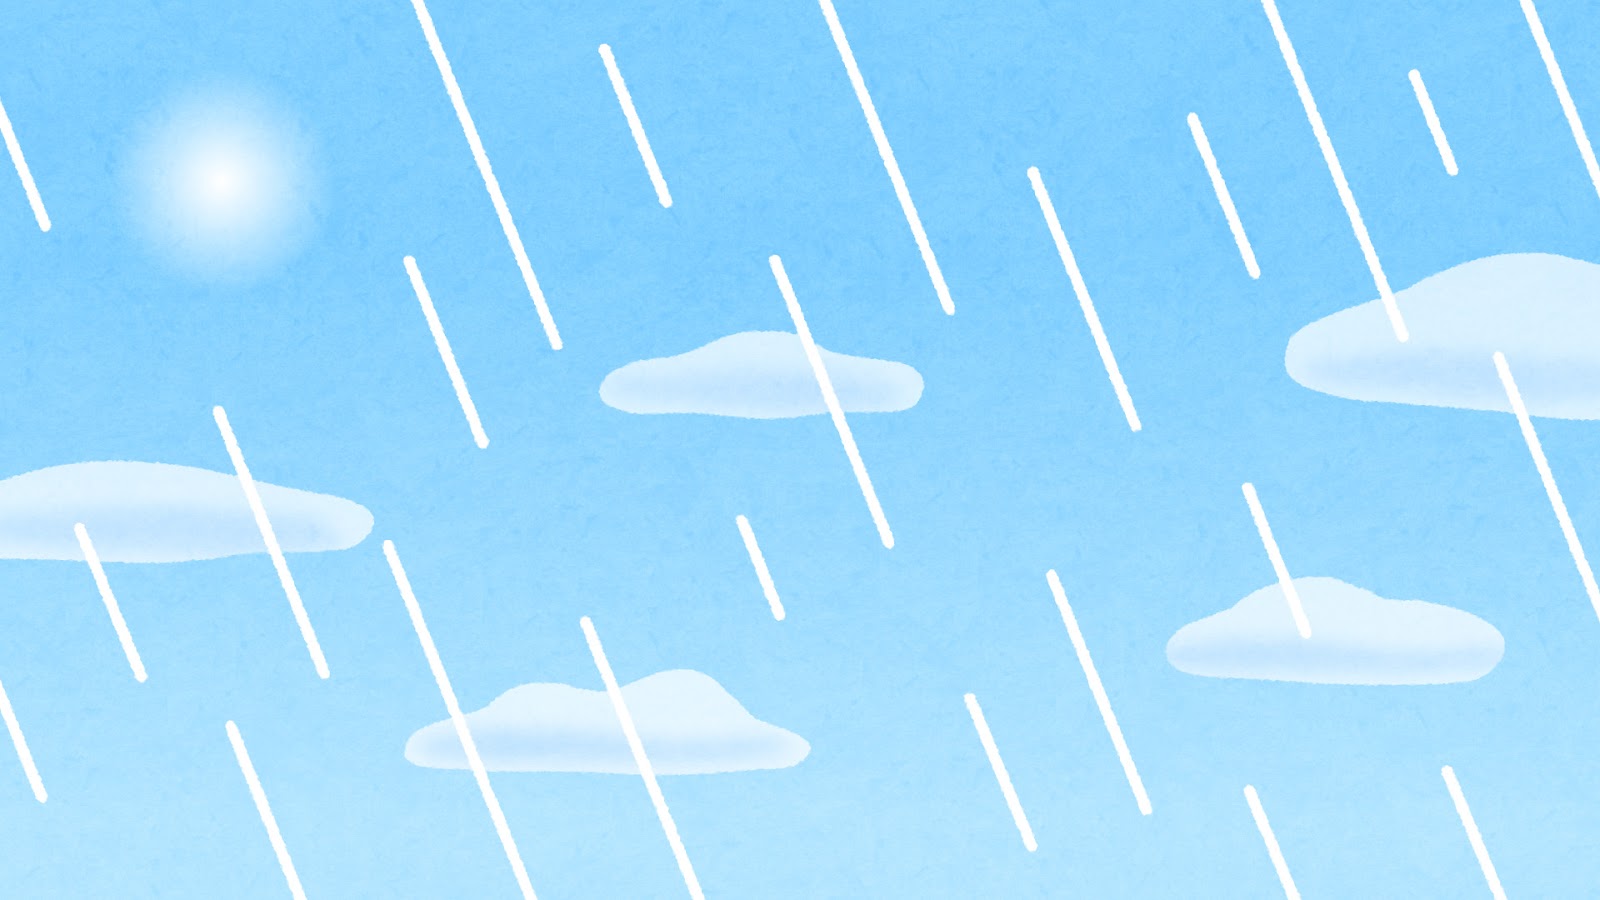 無料イラスト かわいいフリー素材集 天気雨のイラスト 背景素材